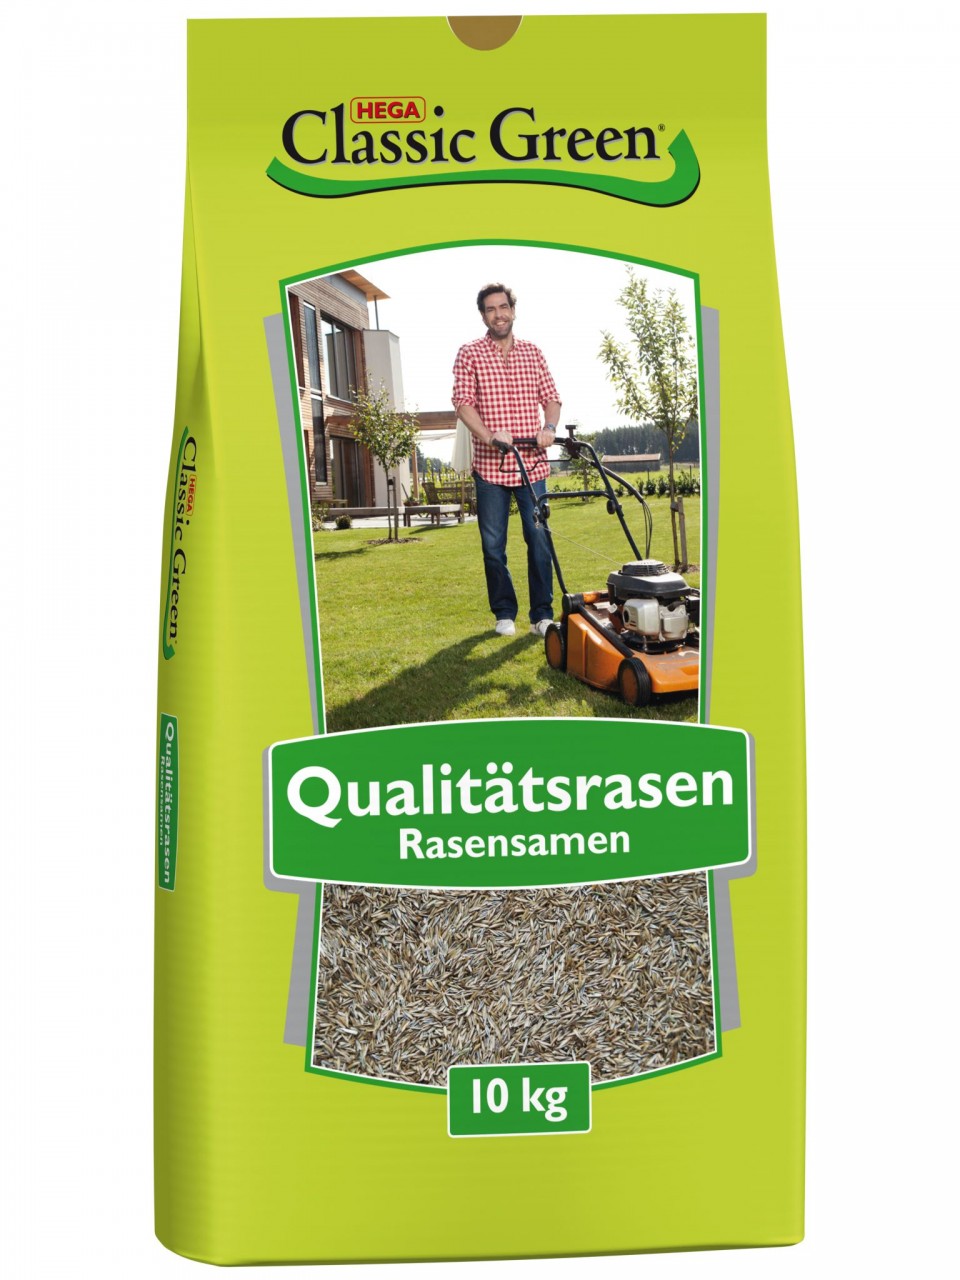 Classic Green Rasen Mischung zum Begrünen 10kg Rasensamen unter Classic Green